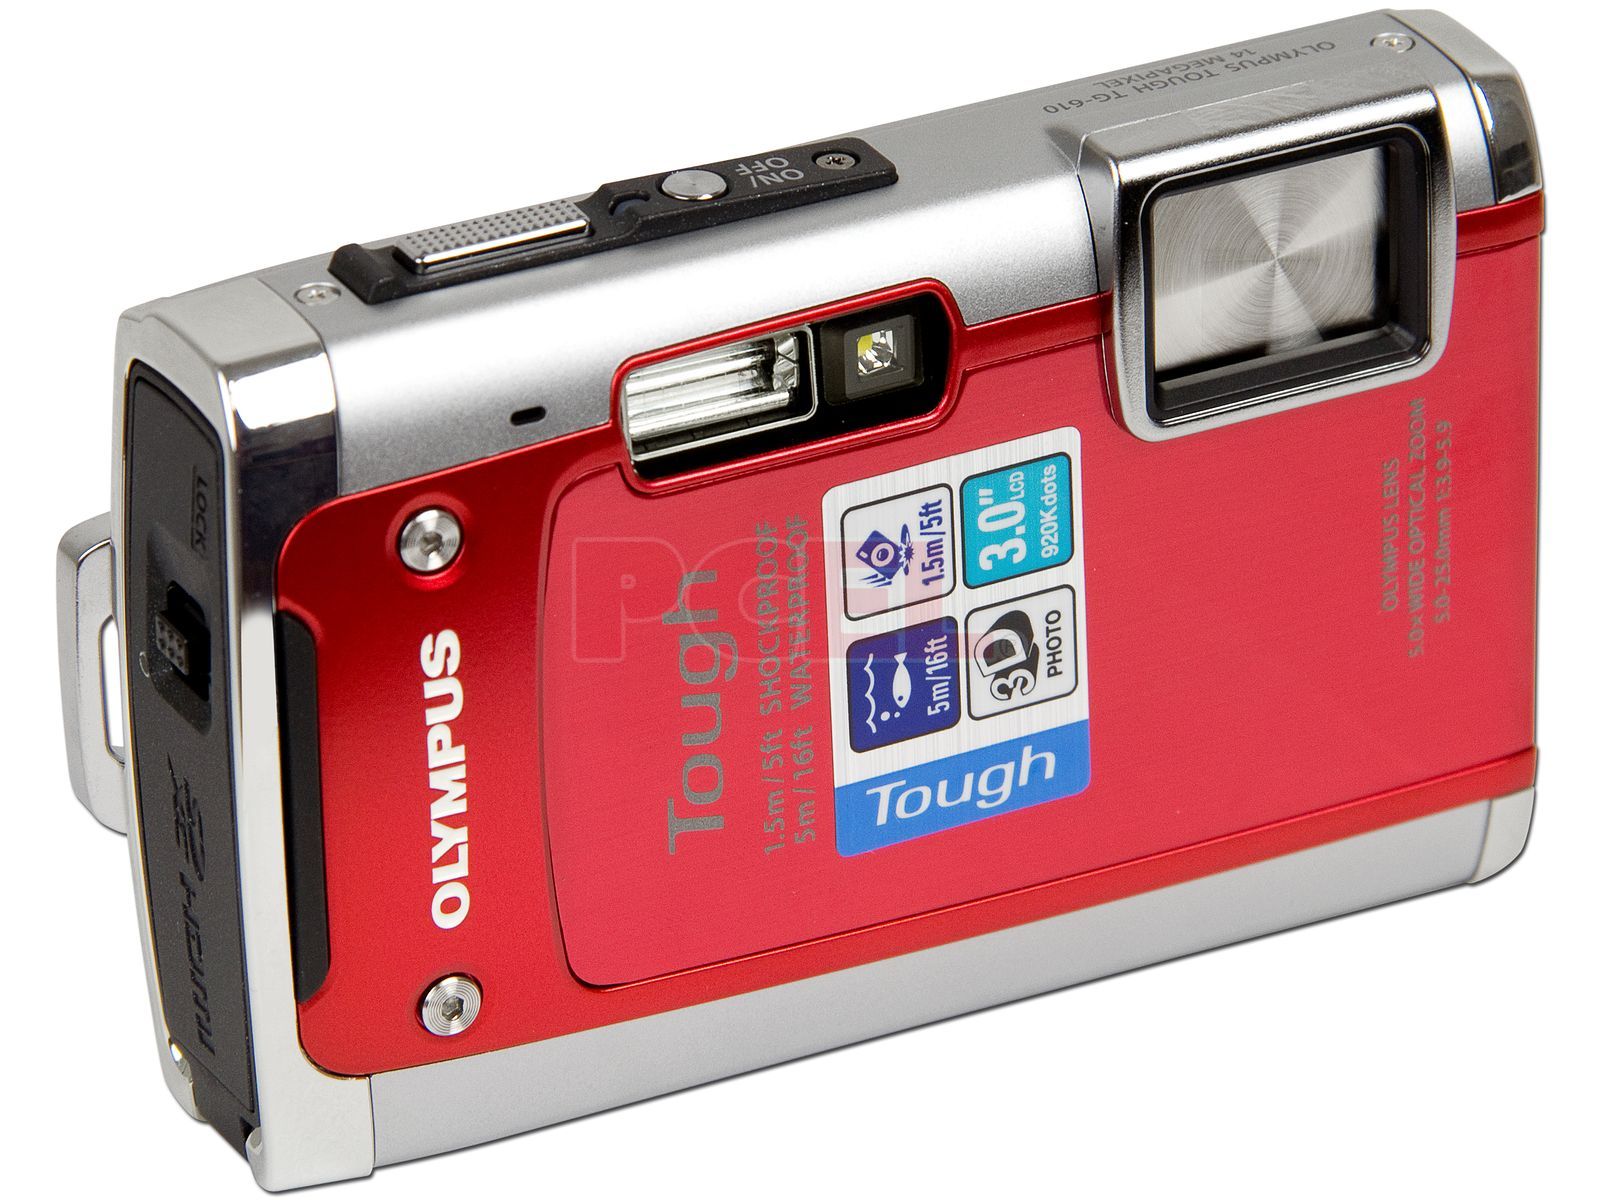 Fotográfica Digital Olympus Tough TG-610 de 14MP, Zoom Óptico 5x, HD 720p, Fotos 3D, resistente al agua hasta golpes y al frío. Color Roja